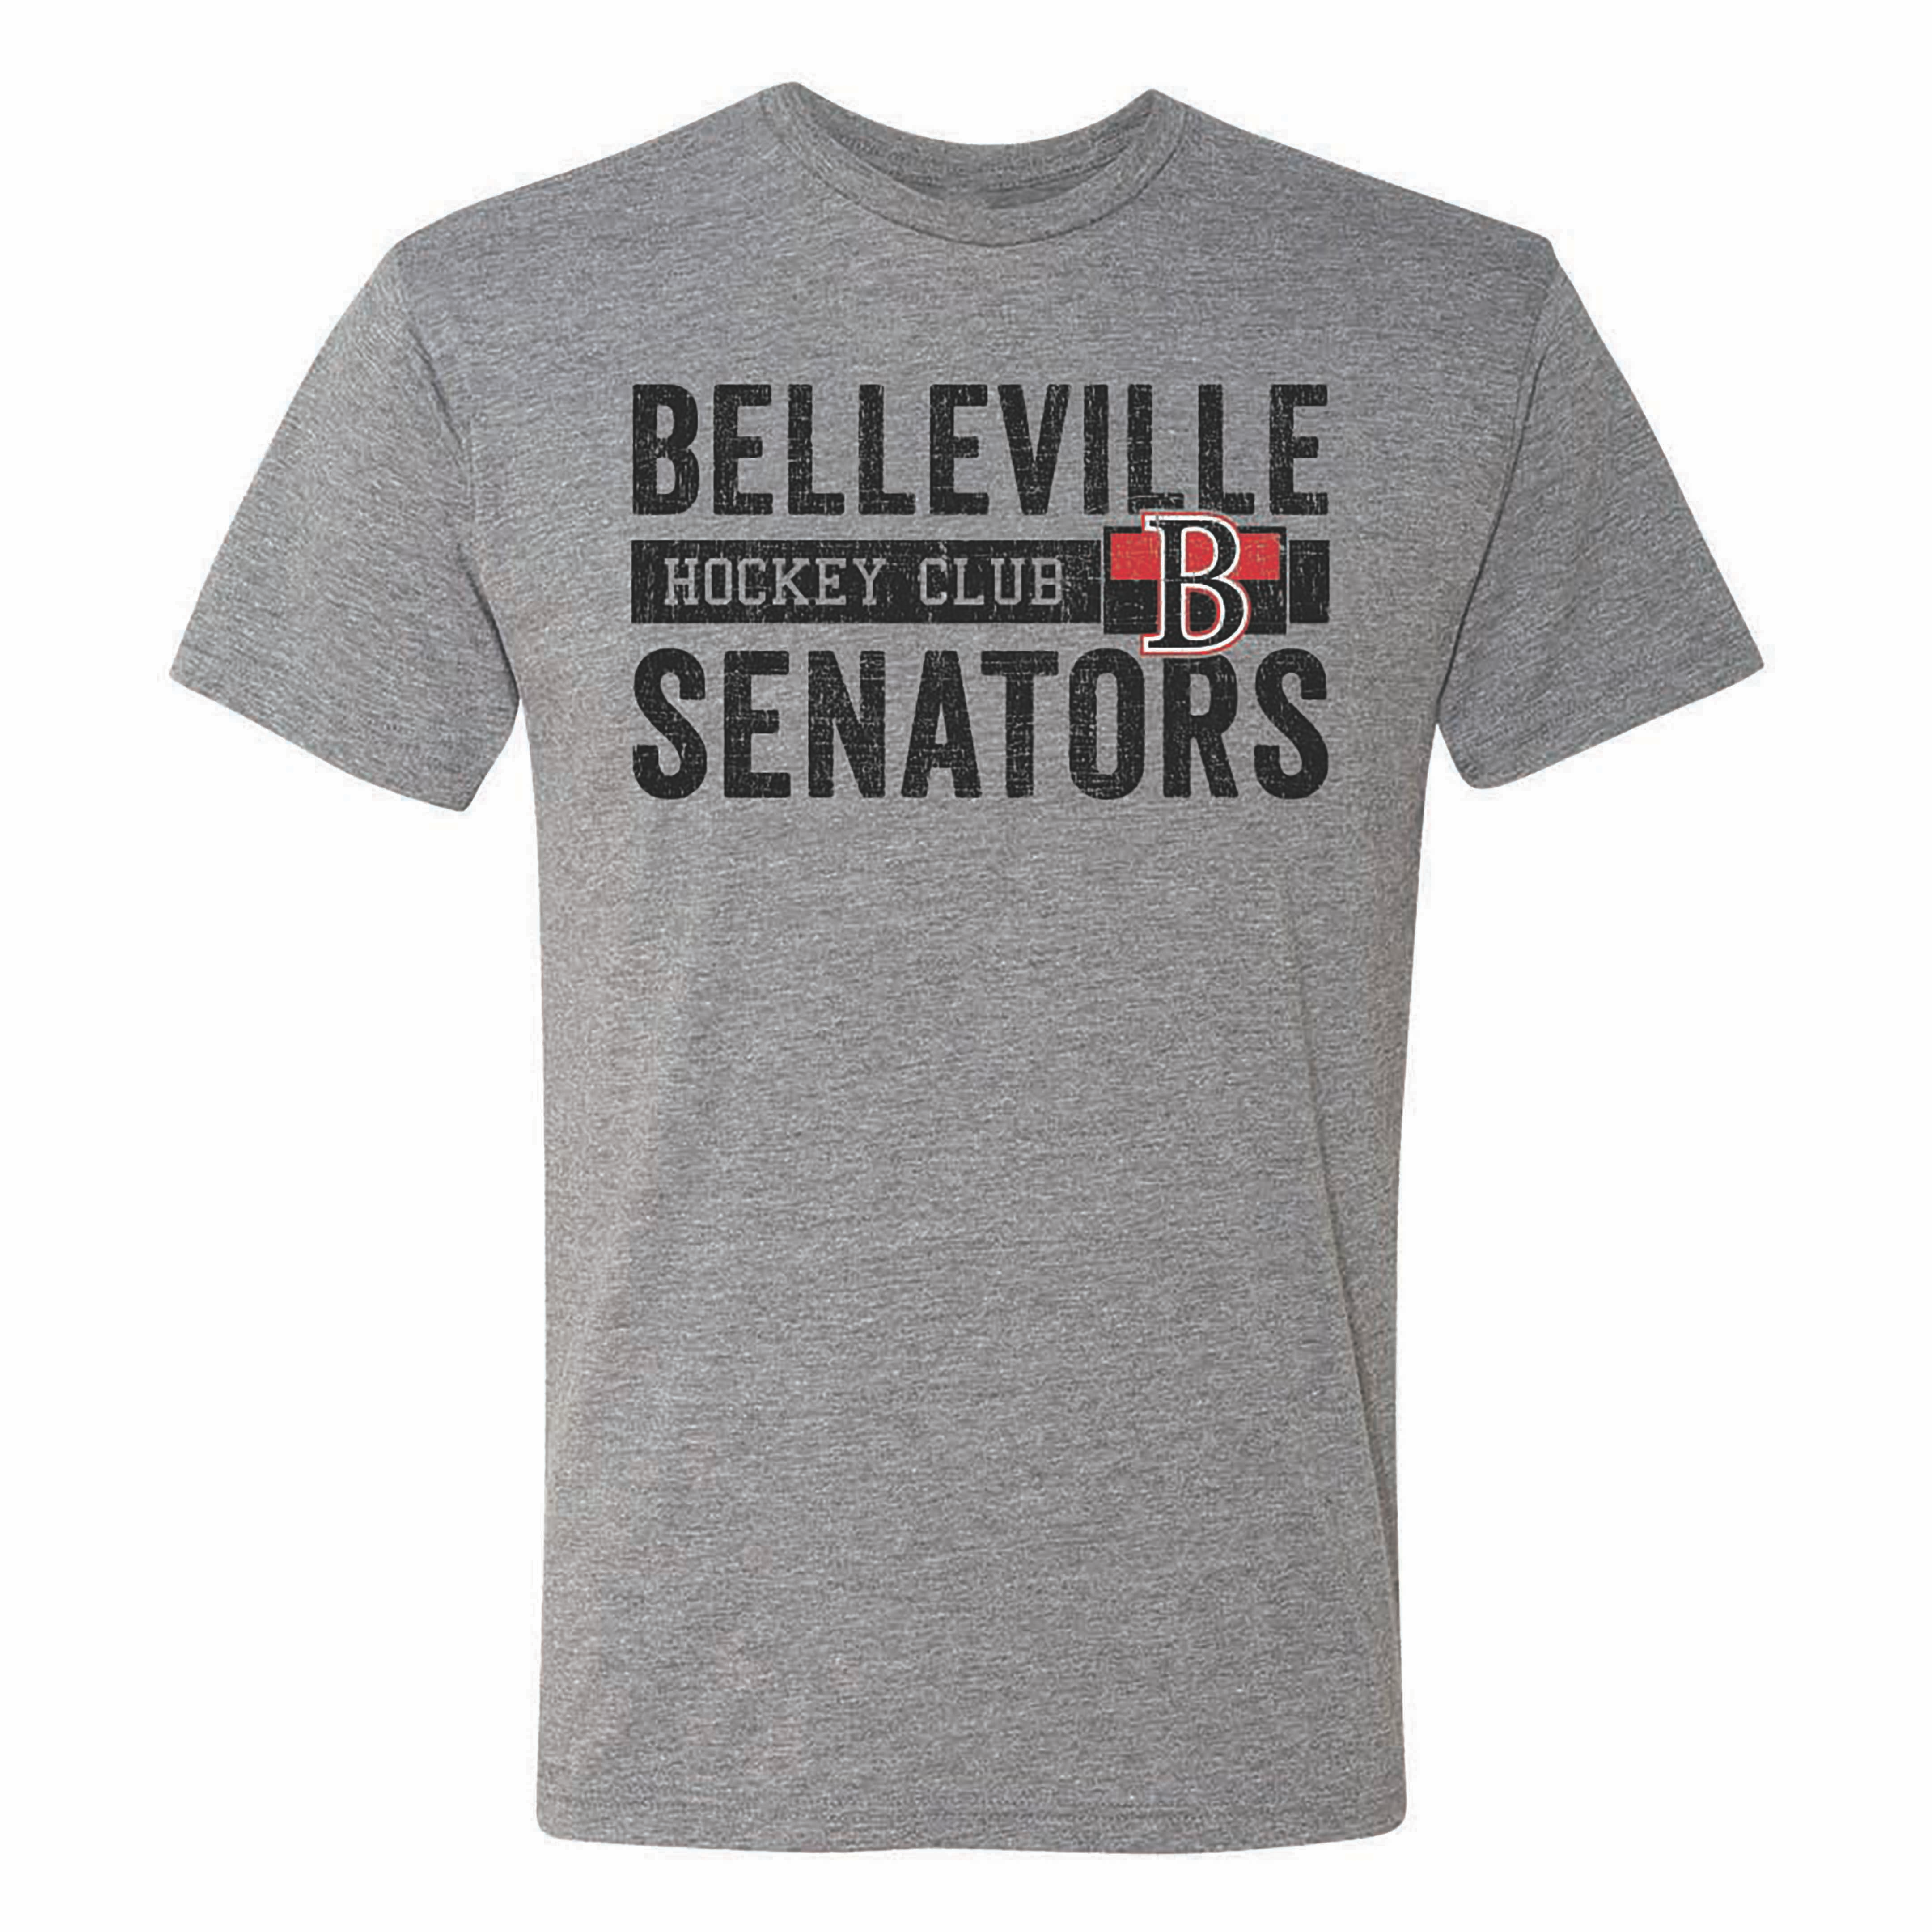 Store Hours - Belleville Senators